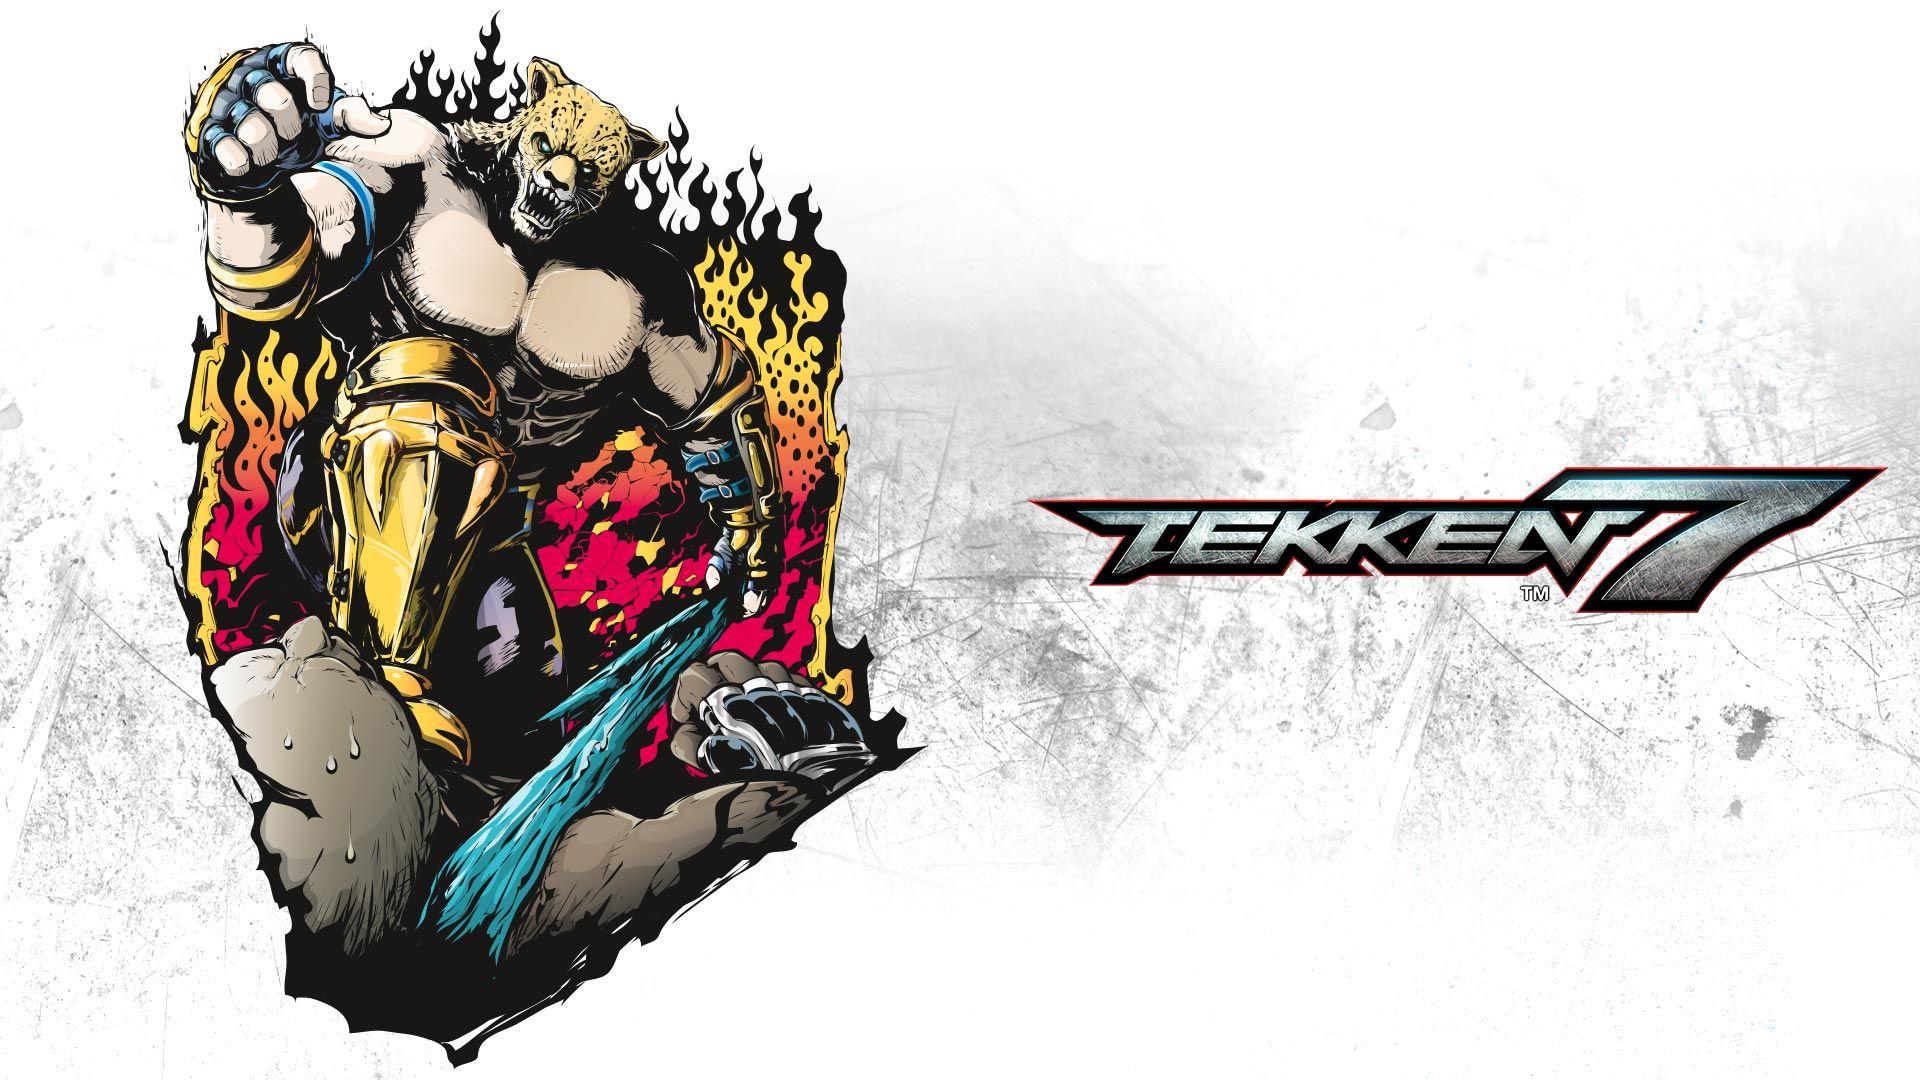 King. Wallpaper from Tekken 7